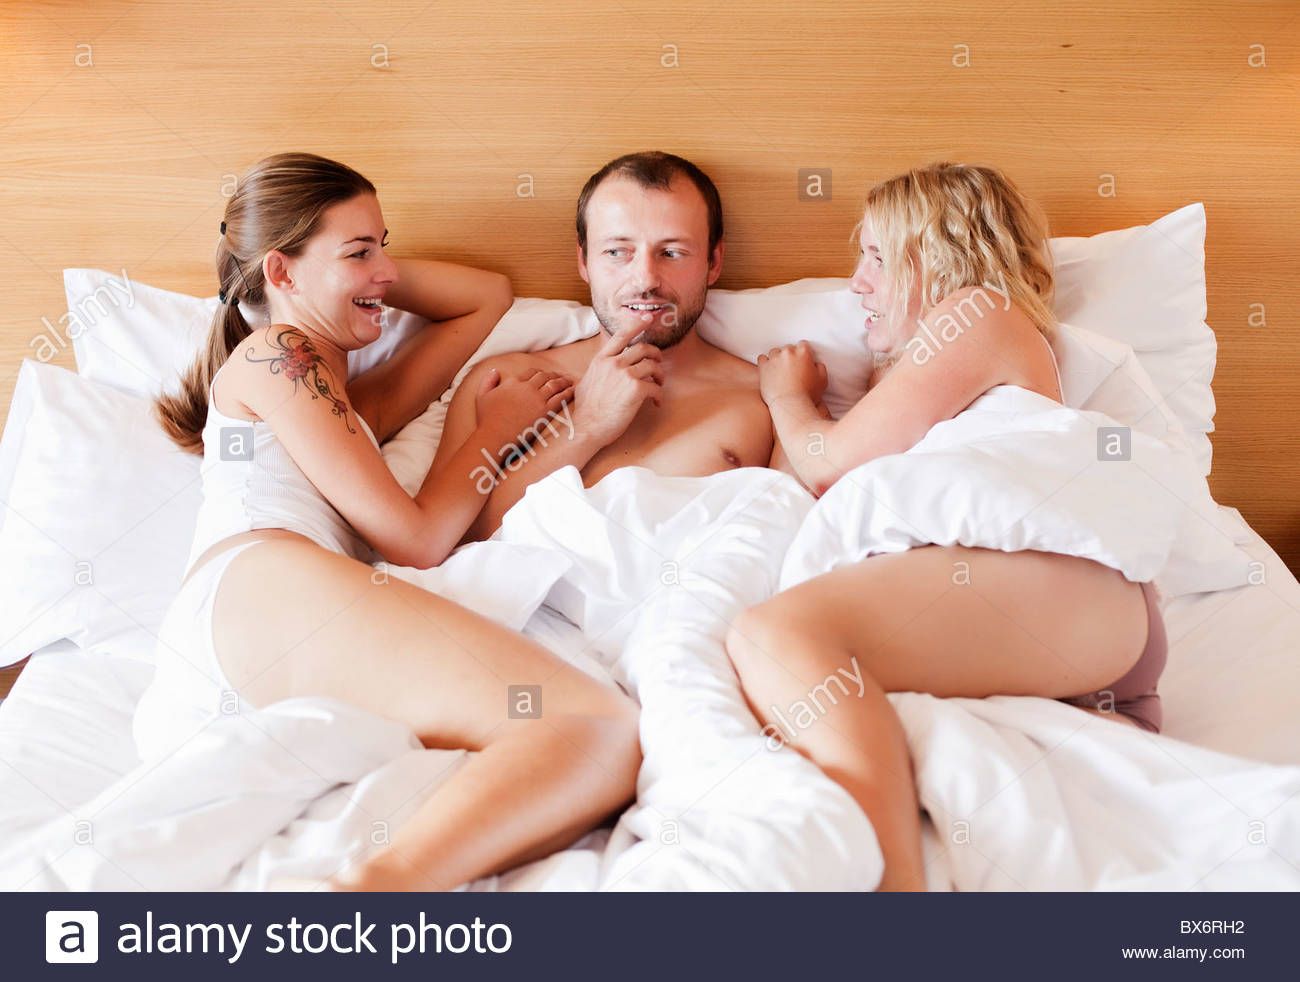 Amateur bed lesbian